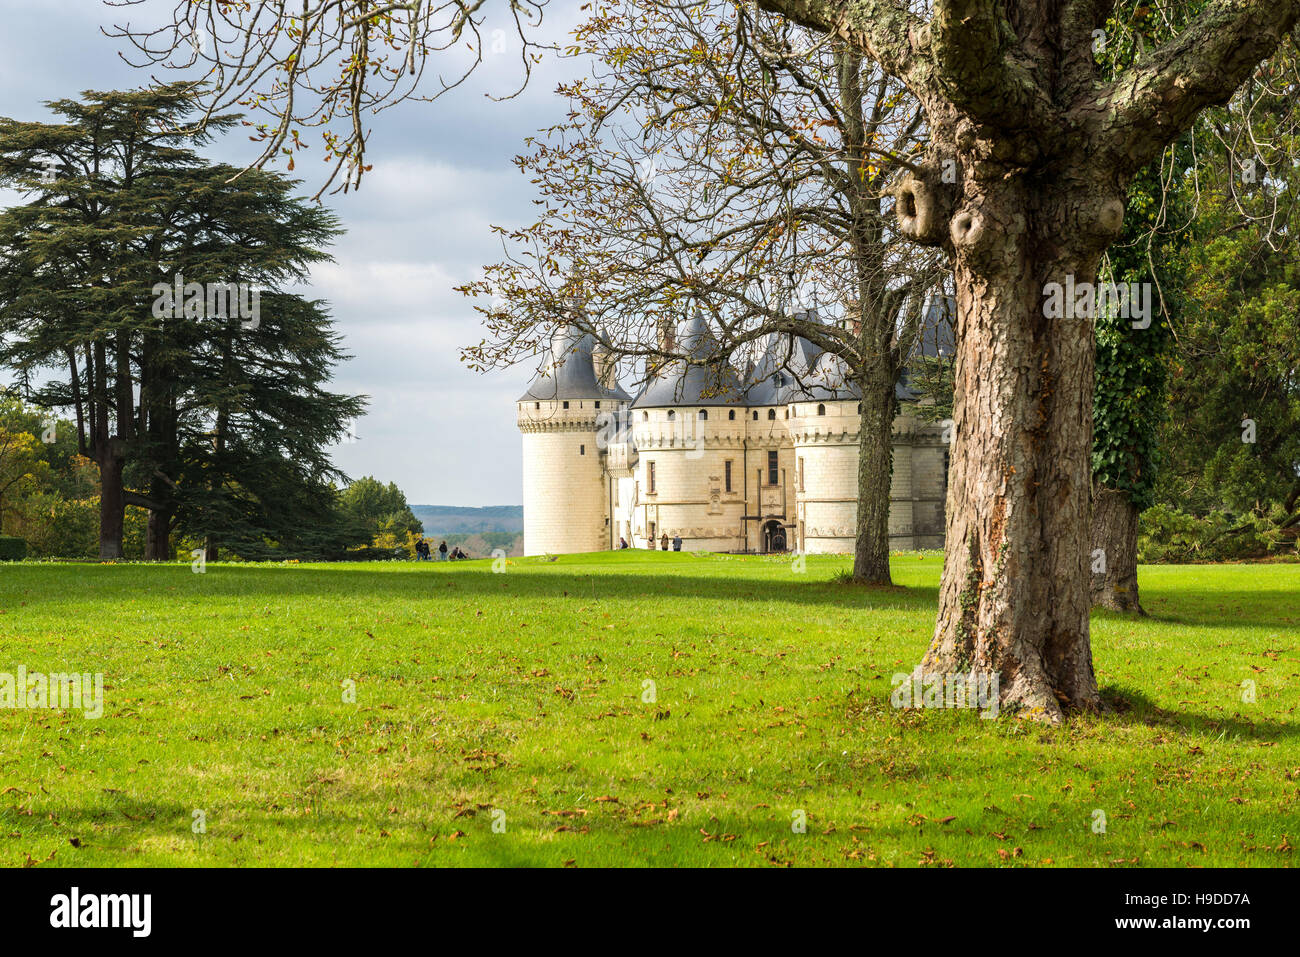 Castle 'château de Chaumont-sur-Loire' (central-western France) and its tree-filled park Stock Photo